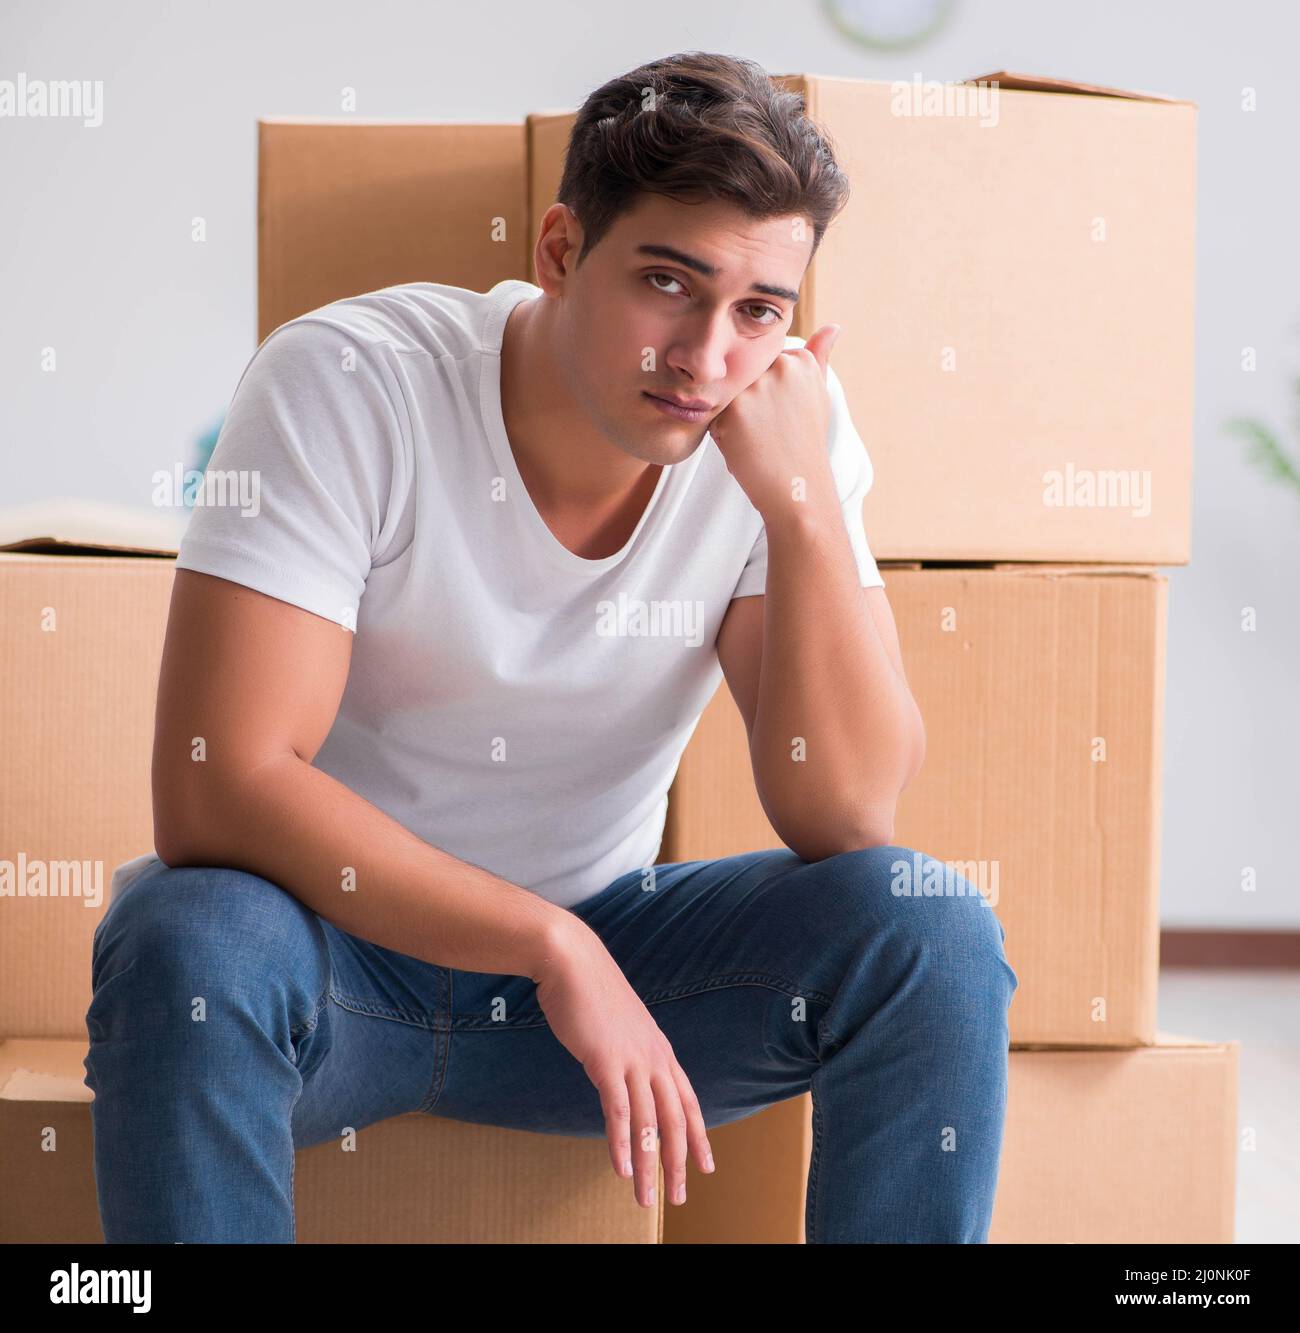 Man caryying boxes at home Stock Photo